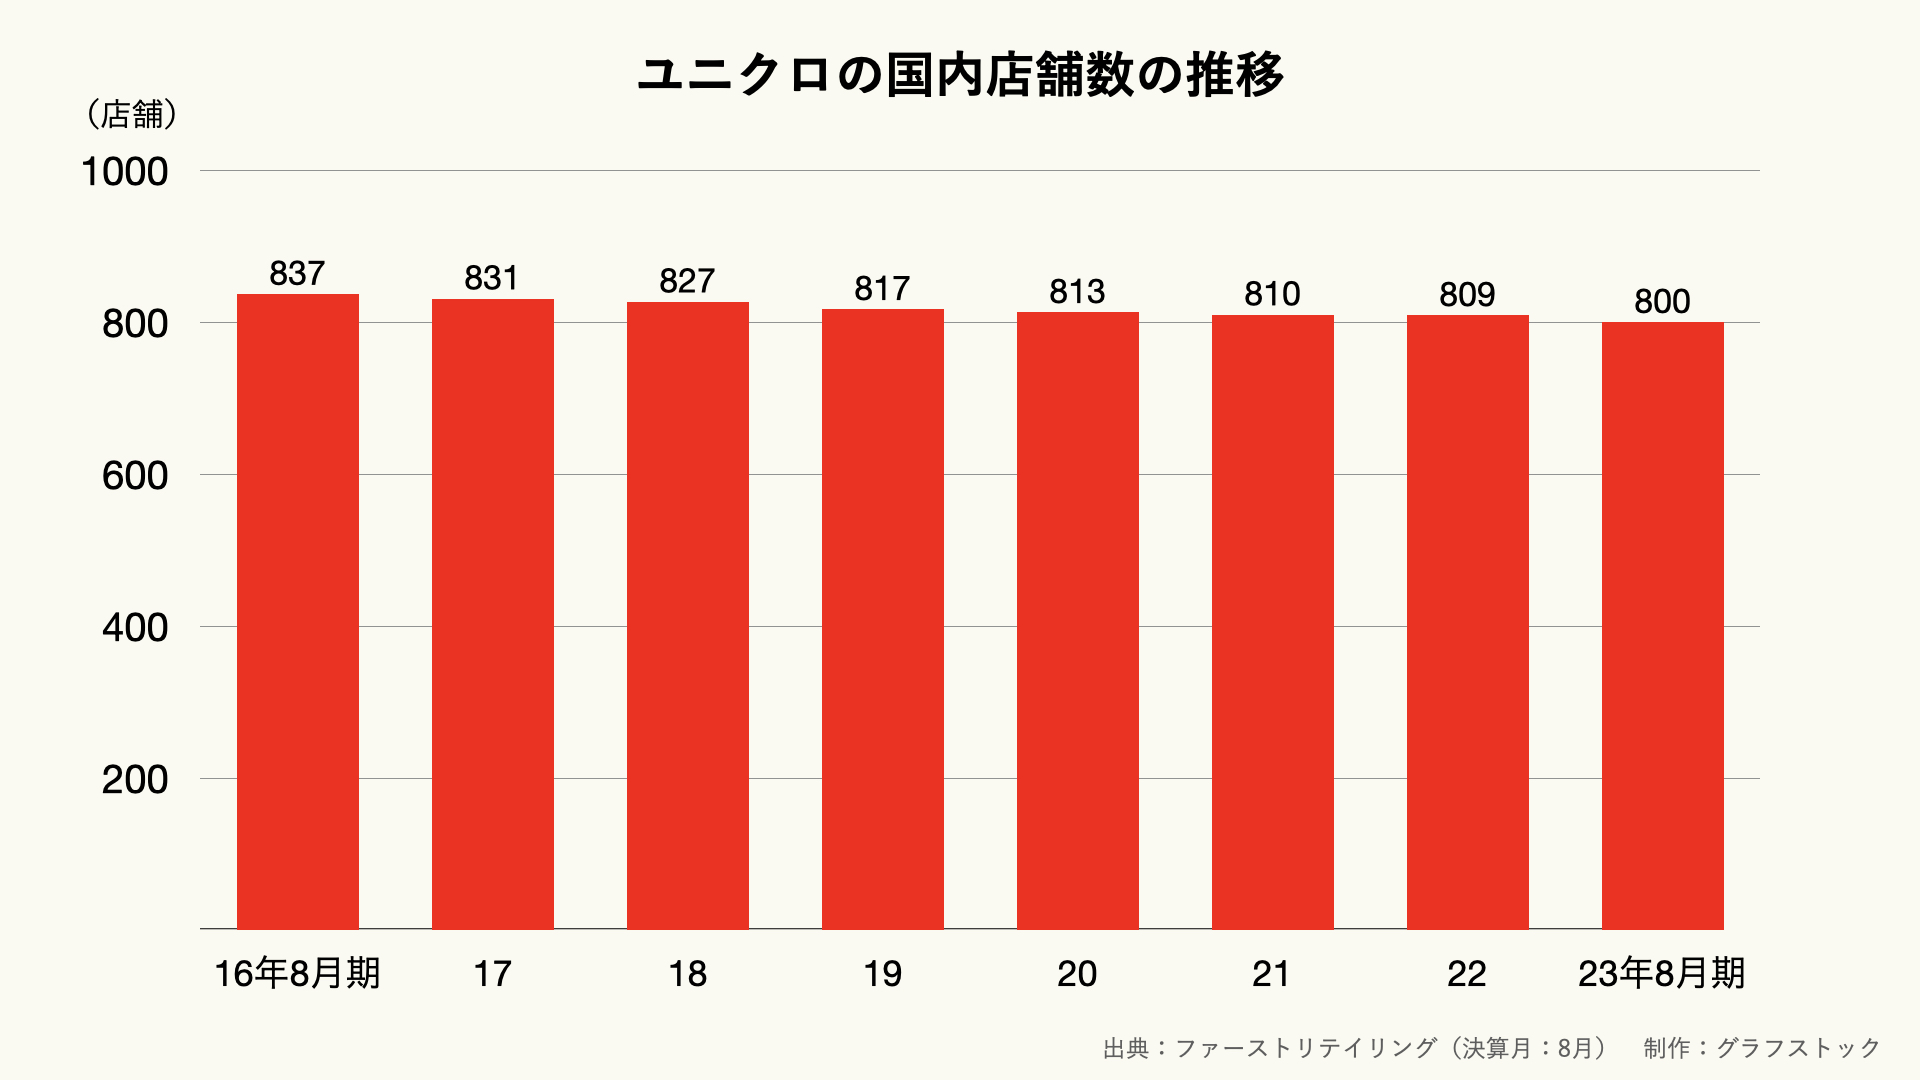 ユニクロの国内店舗数の推移のグラフ